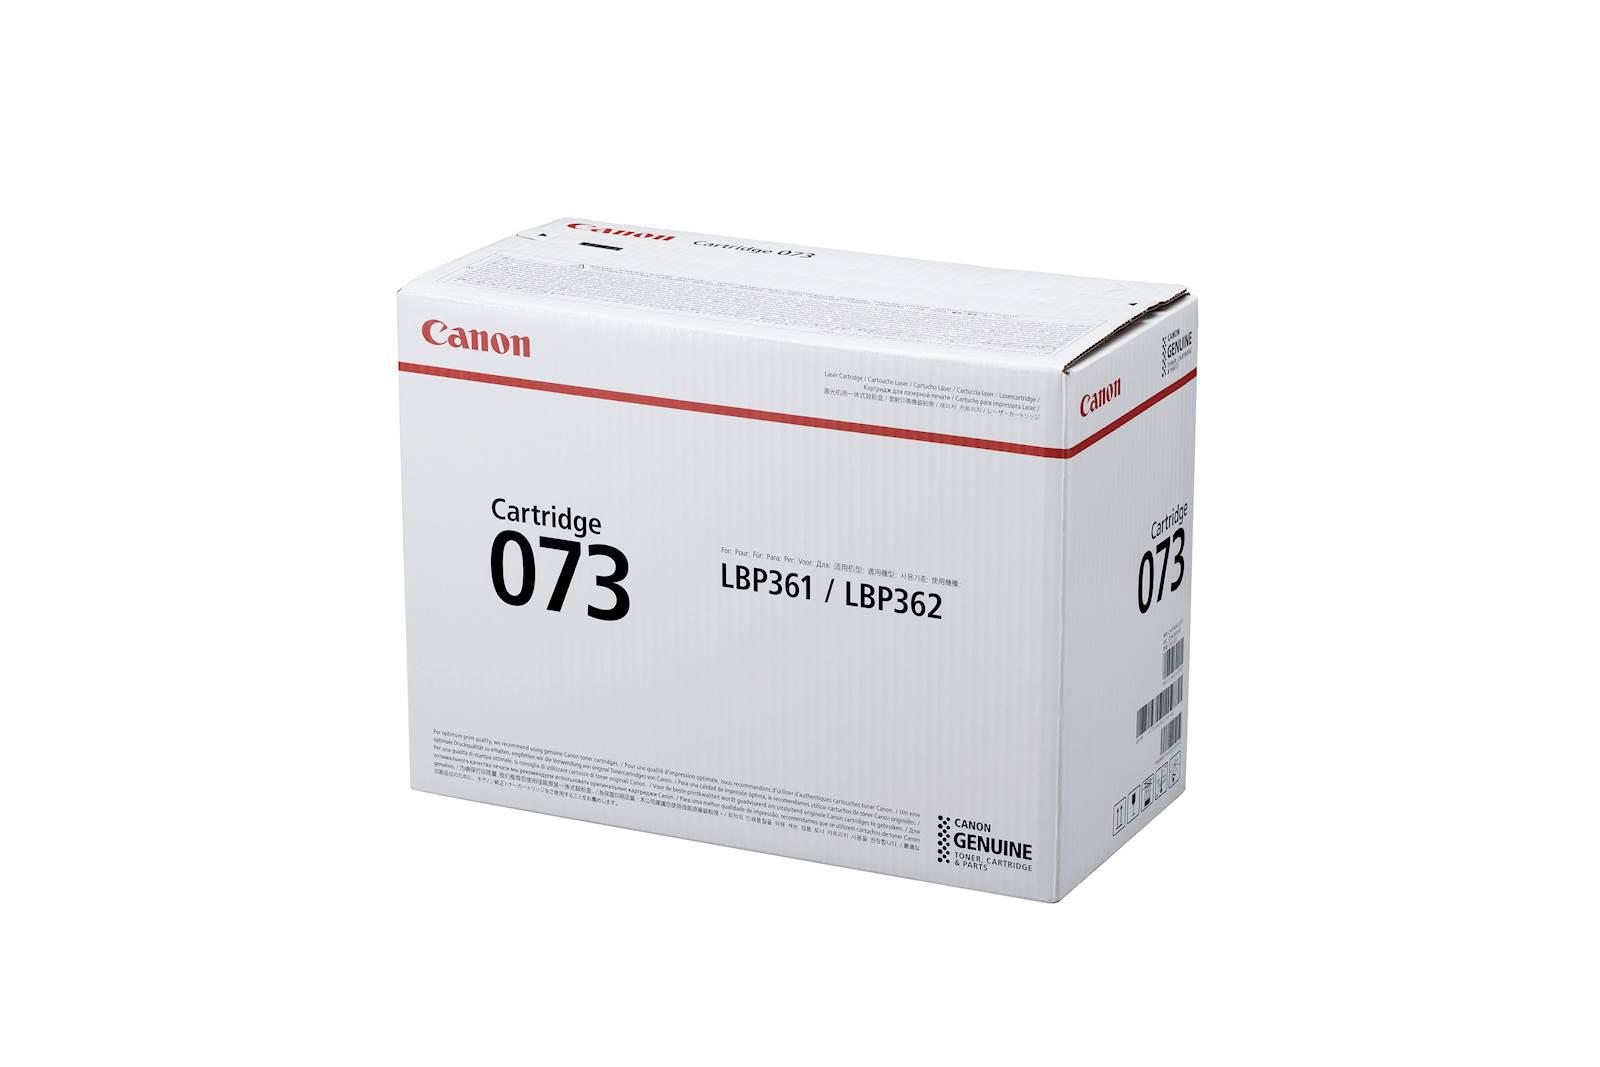 Toner Canon 073B, black, capacitate 27000 pagini, pentru LBP362i / LBP361i.